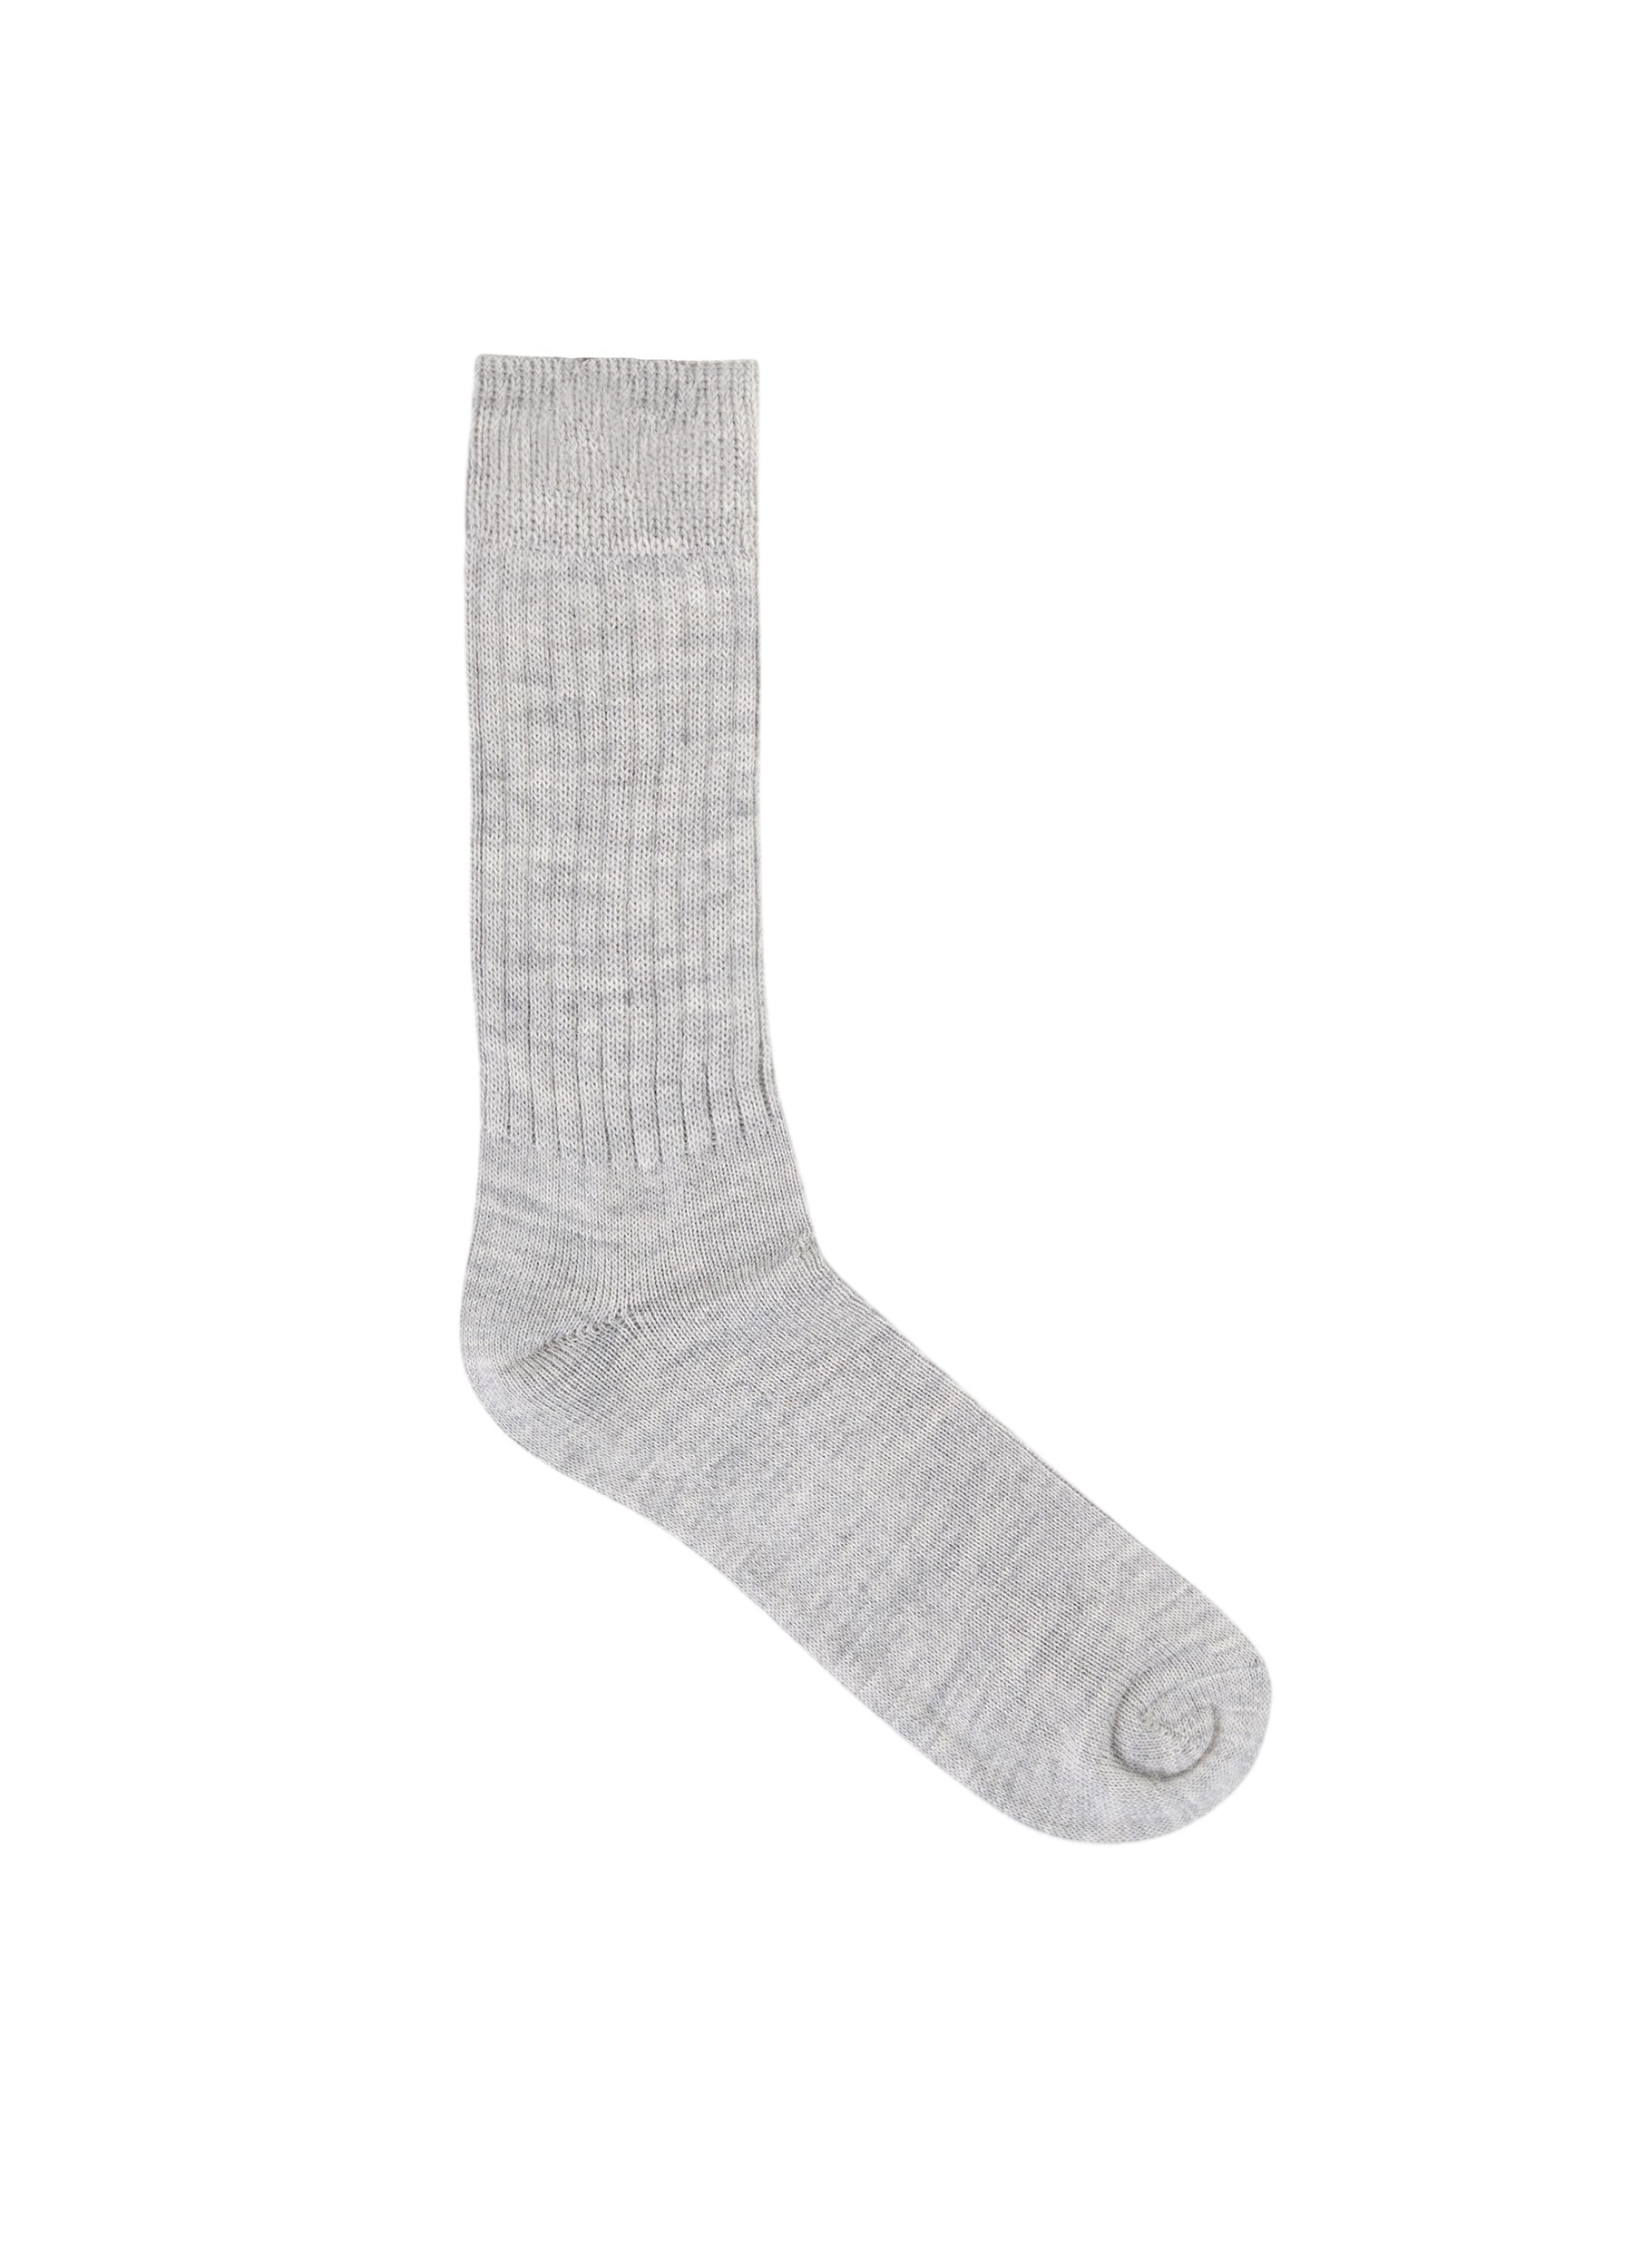 Socks Light Grey